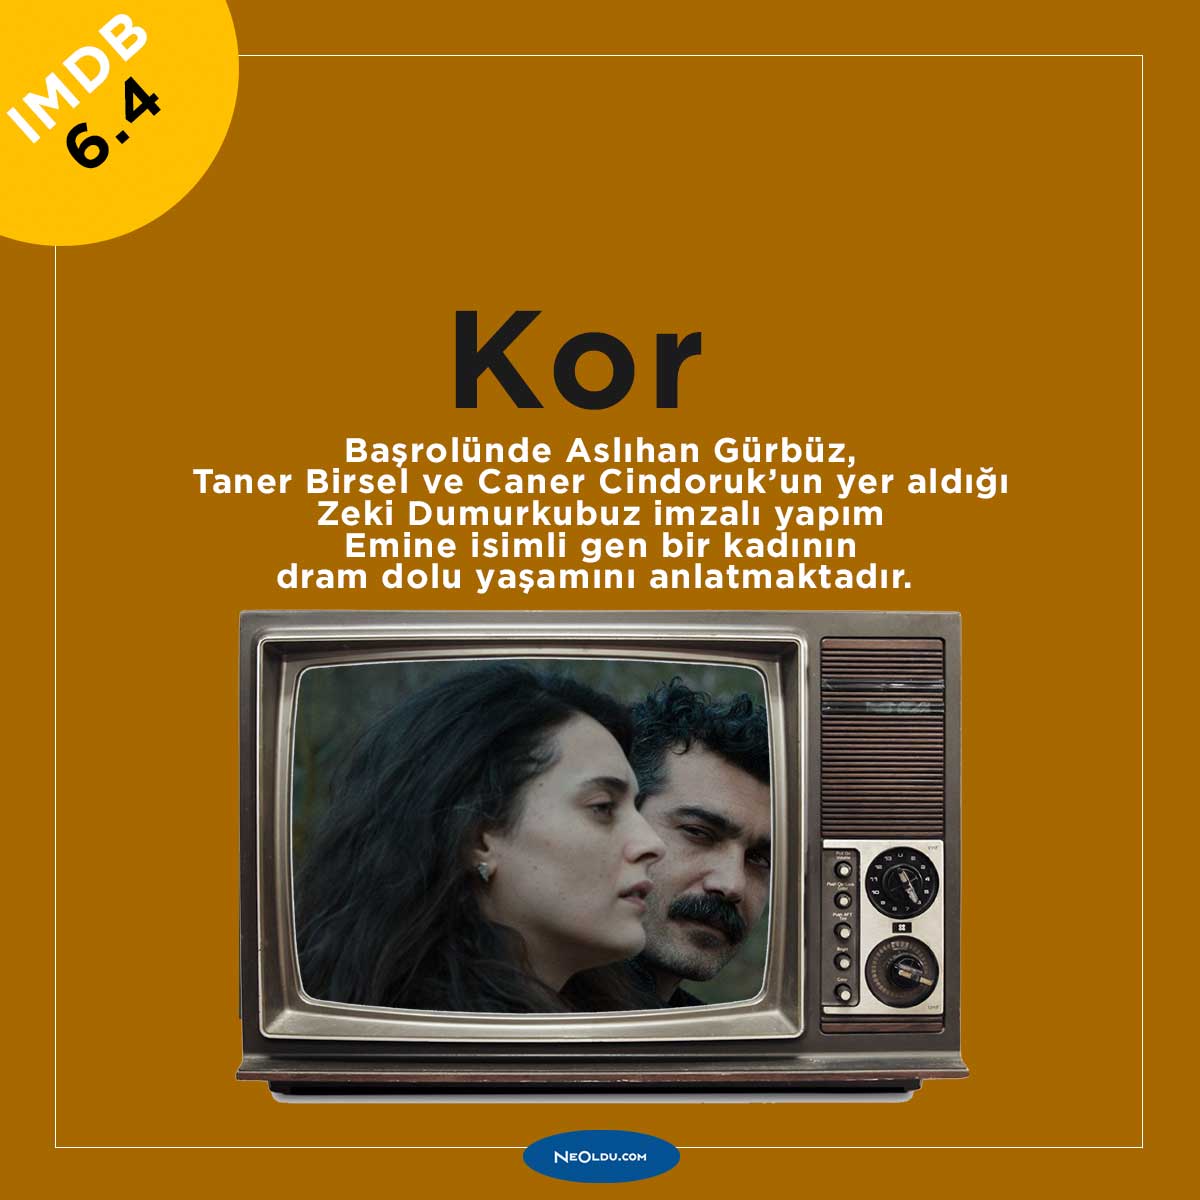 Blu TV Türk Filmleri